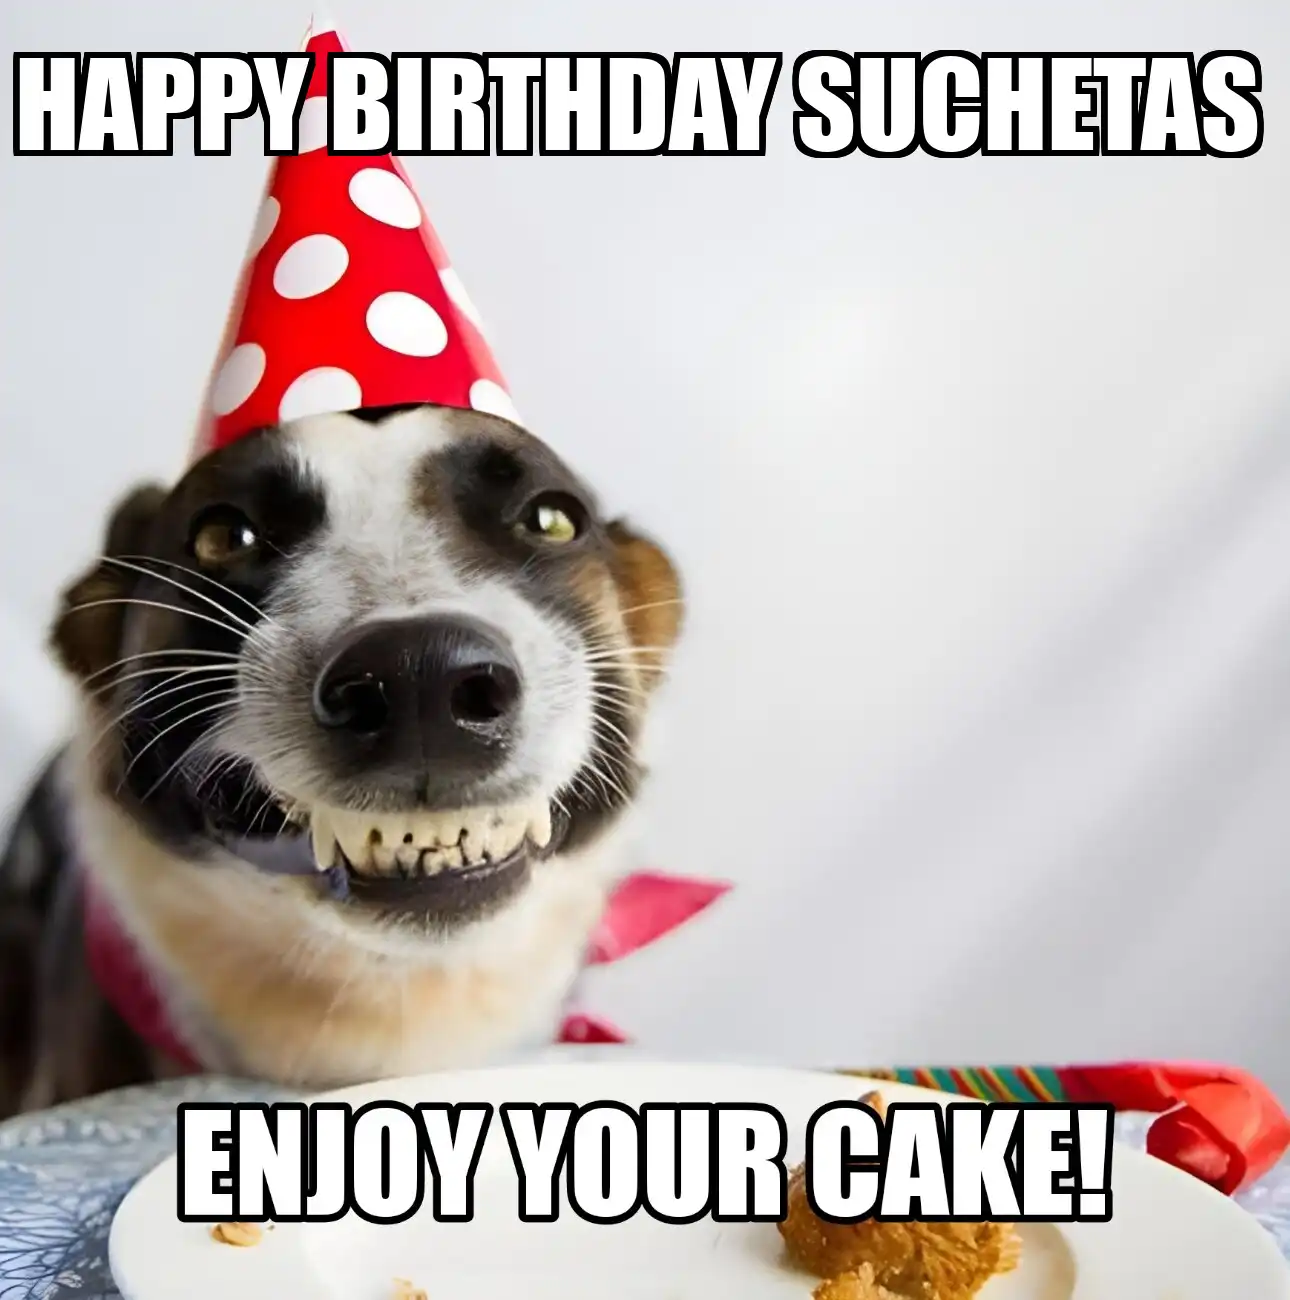 Happy Birthday Suchetas Enjoy Your Cake Dog Meme